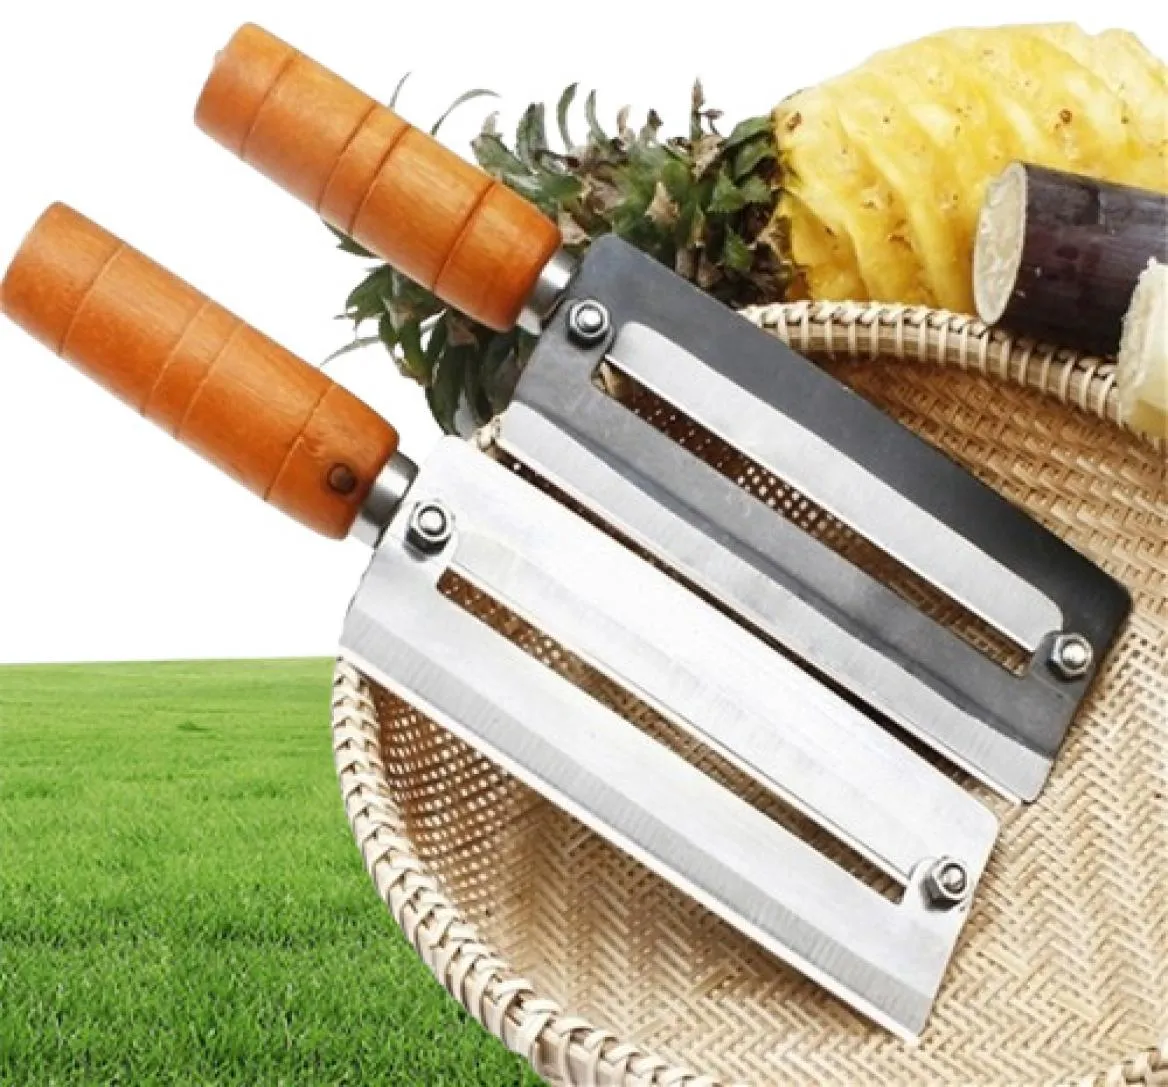 descascadores cutter cutter cenas de cana -de -açúcar faca abacaxi faca de aço inoxidável artefato ferramenta de planejamento descascão frutas paring knife 20122905383